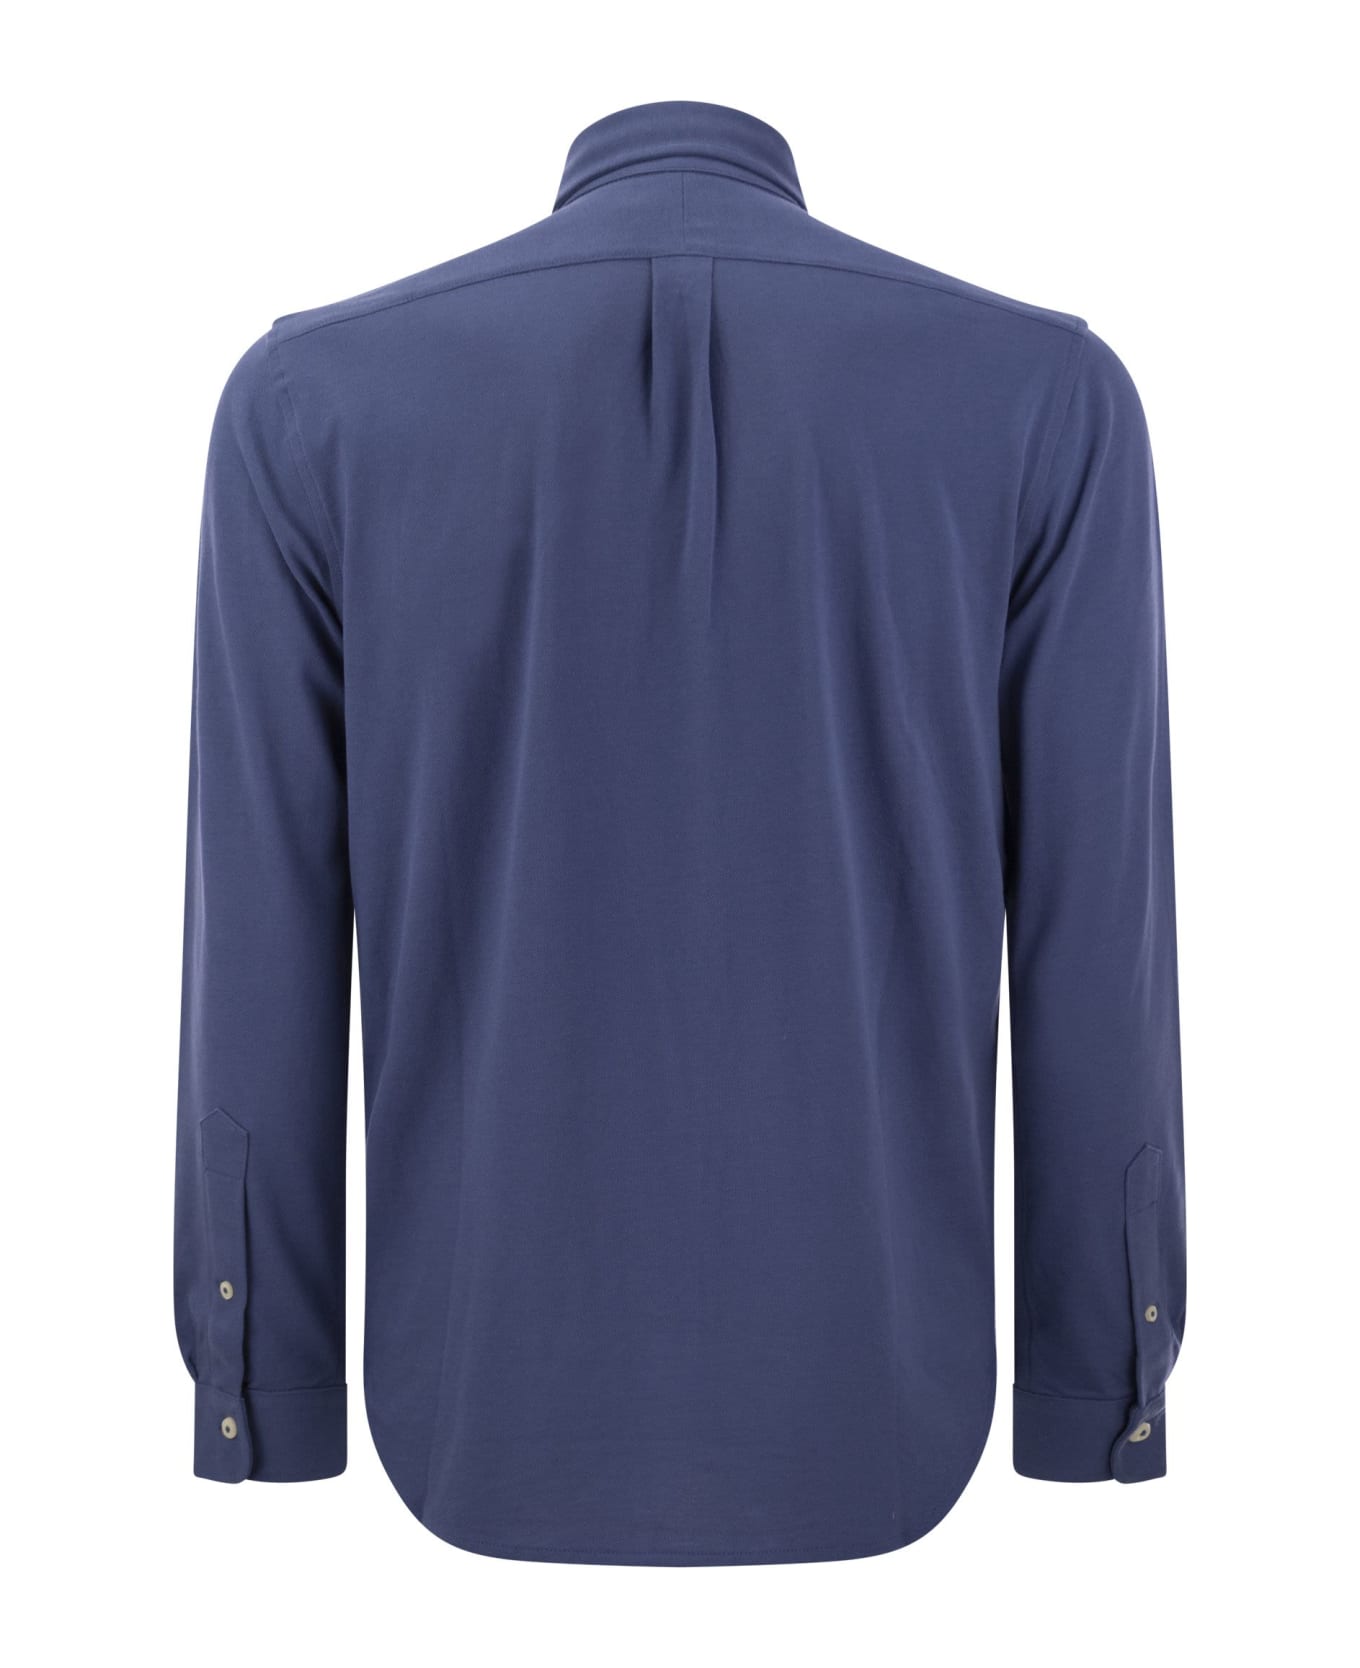 Ralph Lauren Ultralight Pique Shirt - Old royal シャツ